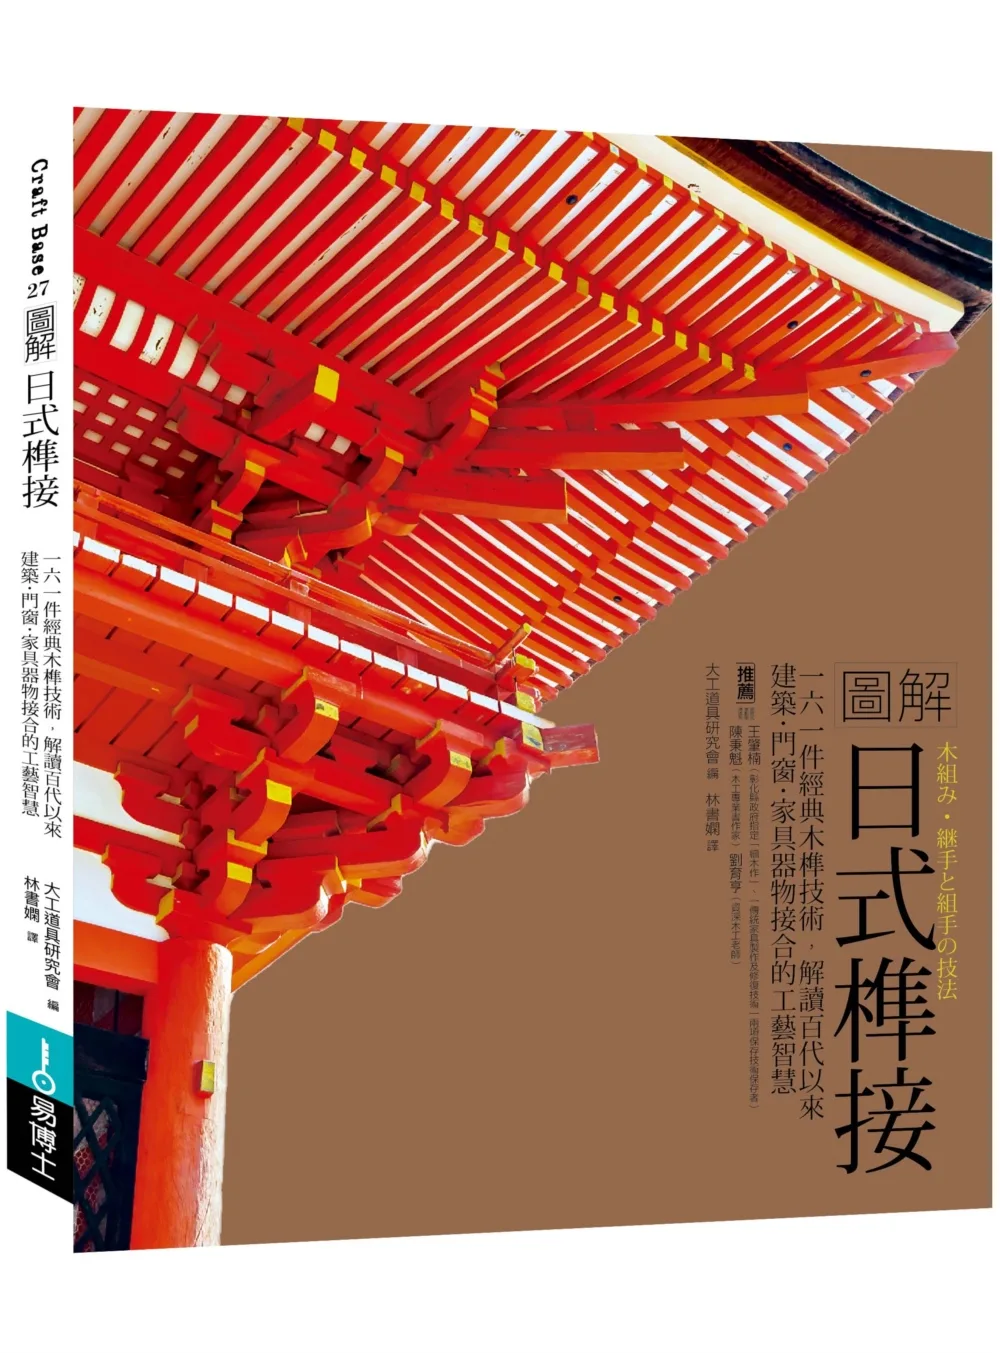 圖解日式榫接：一六一件經典木榫技術，解讀百代以來建築•門窗•家具器物接合的工藝智慧